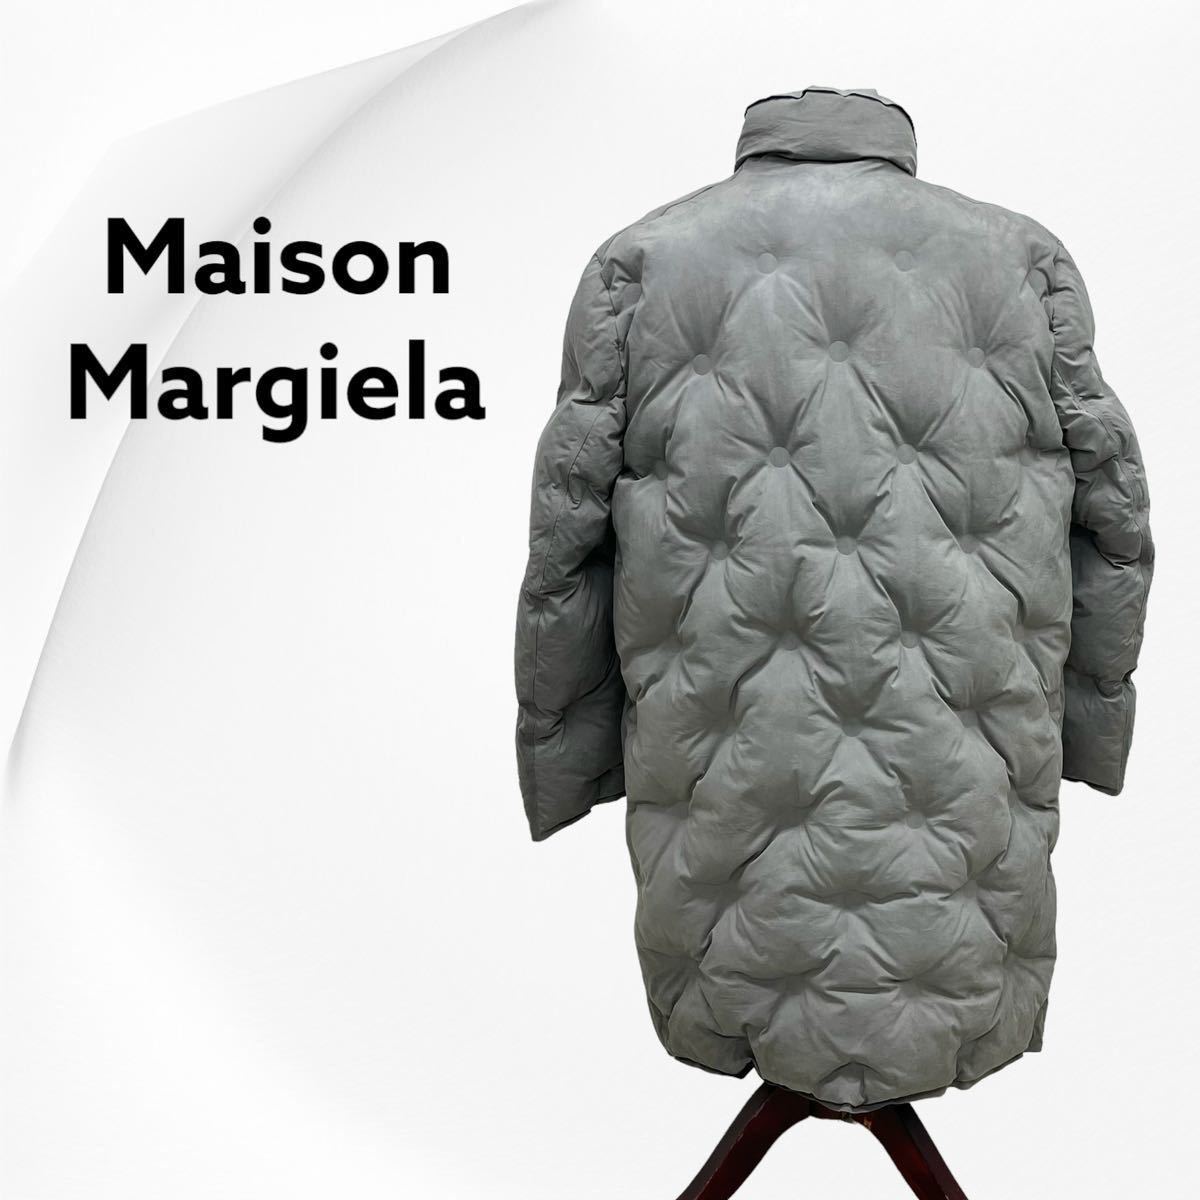 Maison Margiela メゾンマルジェラ 19AW グラムスラム オーバーサイズ キルティング パデッドコート レディース S29AA0212 